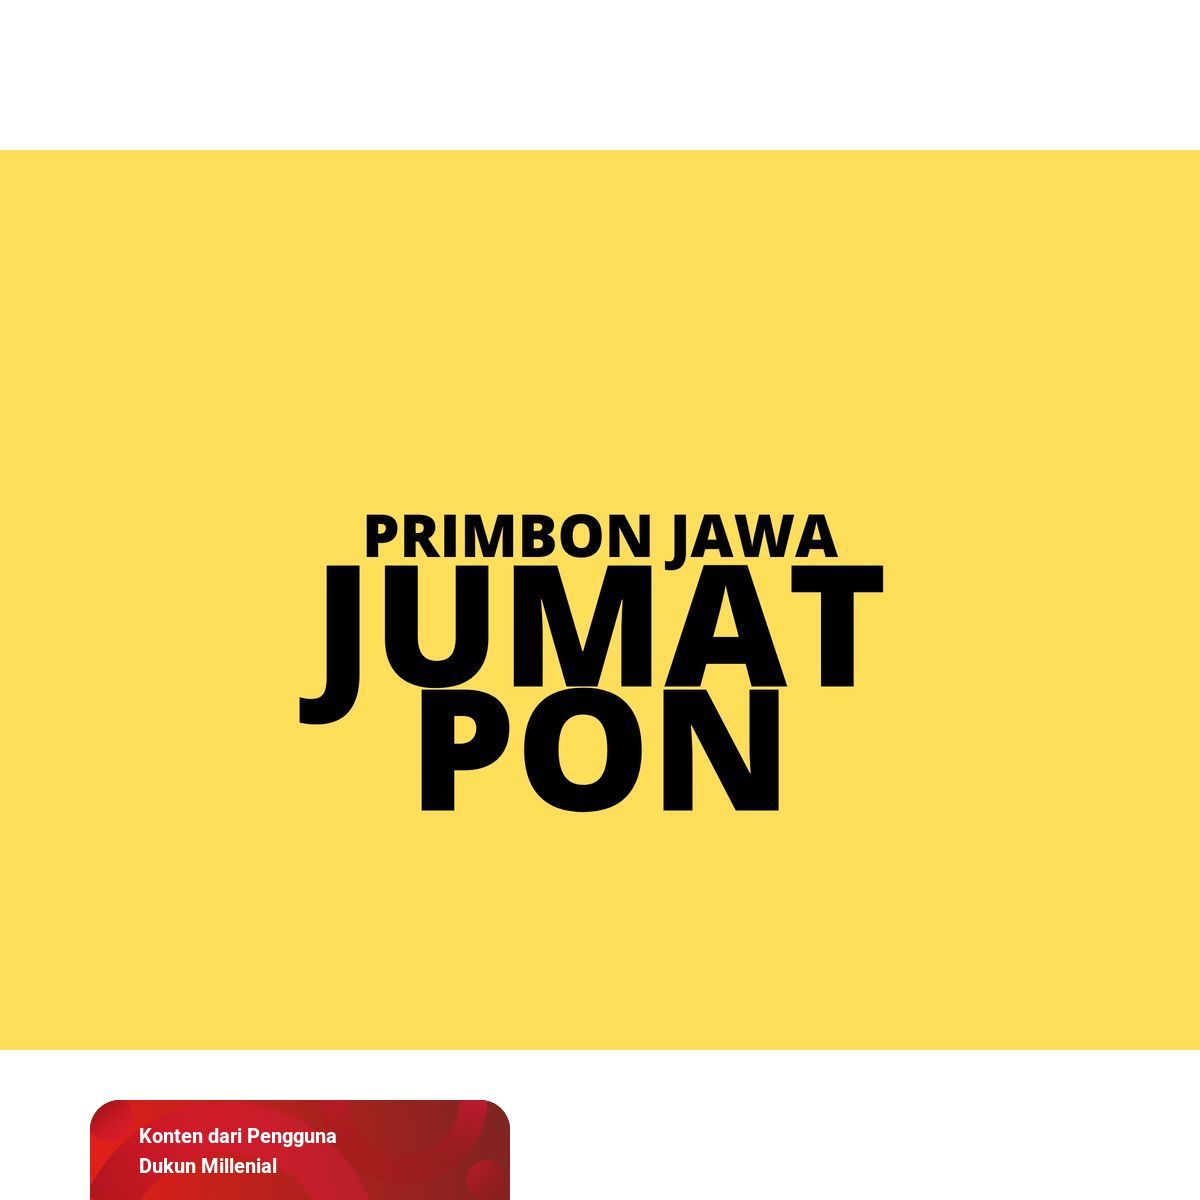 Primbon Jawa Jumat Pon | Kumparan.com